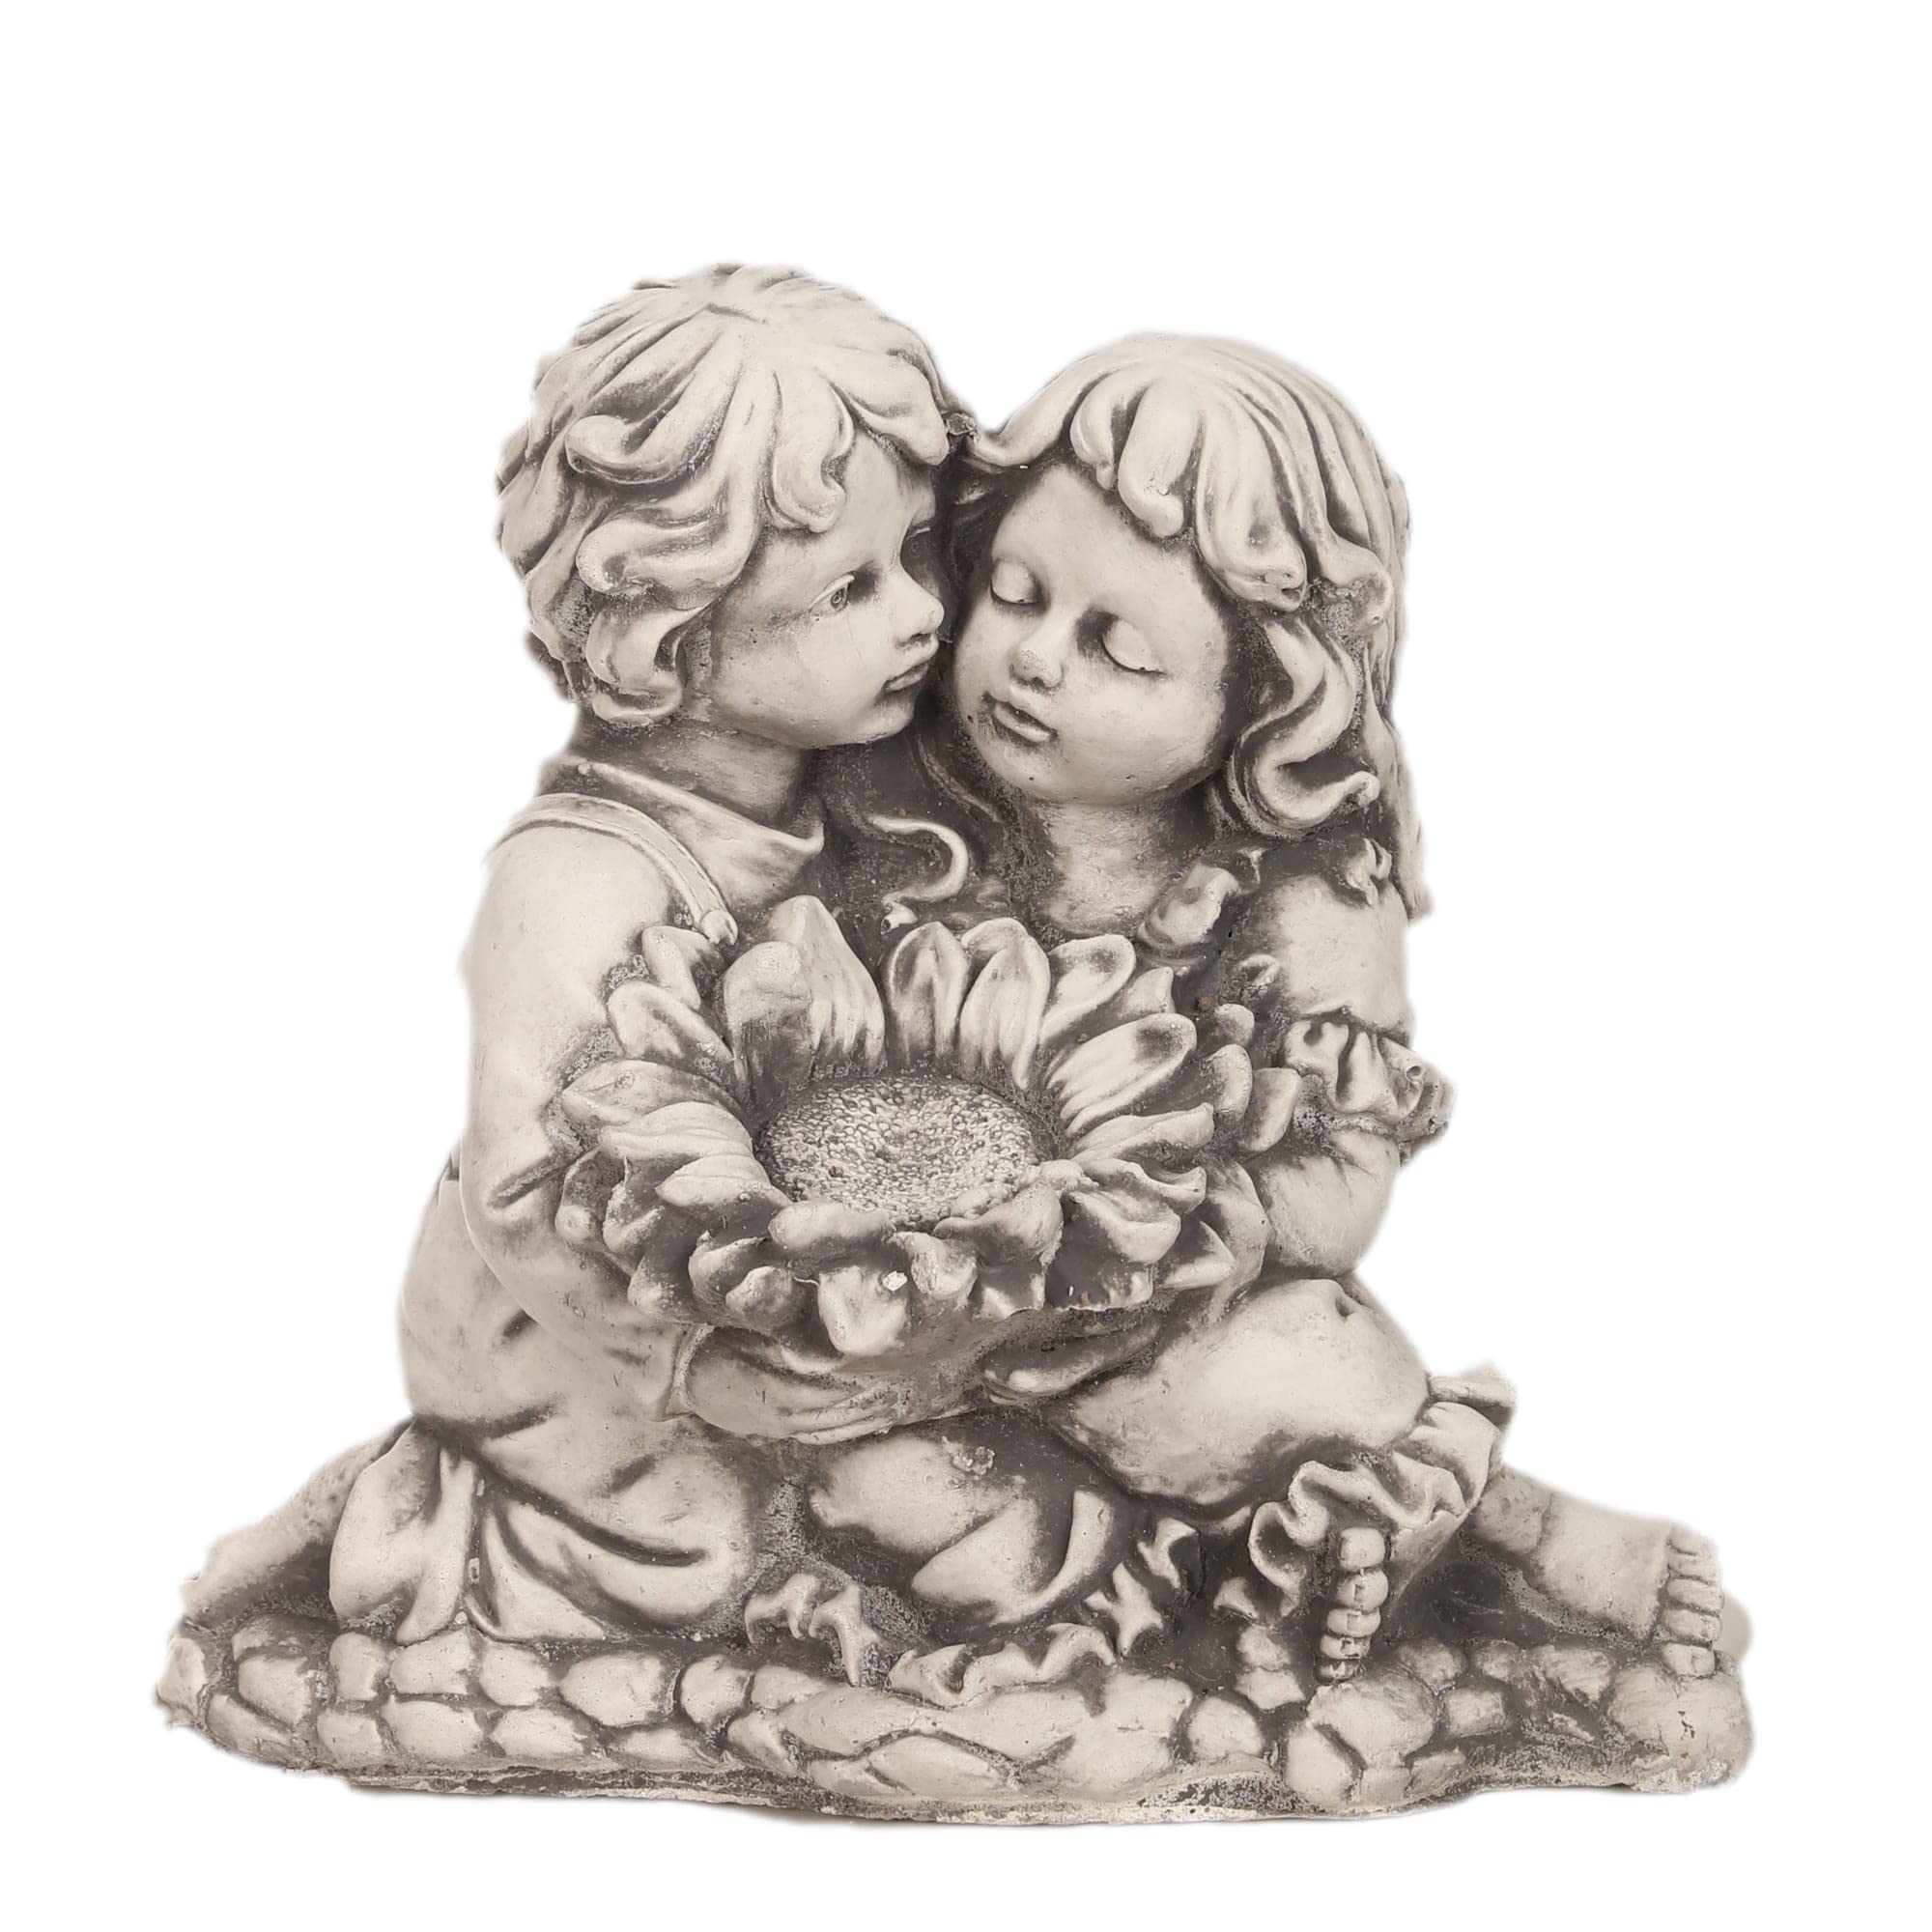 ANTYKI24 Zarte Kinderfigur mit Sonnenblume – Beton-Skulptur für den Garten, Harmonisches Kunstwerk